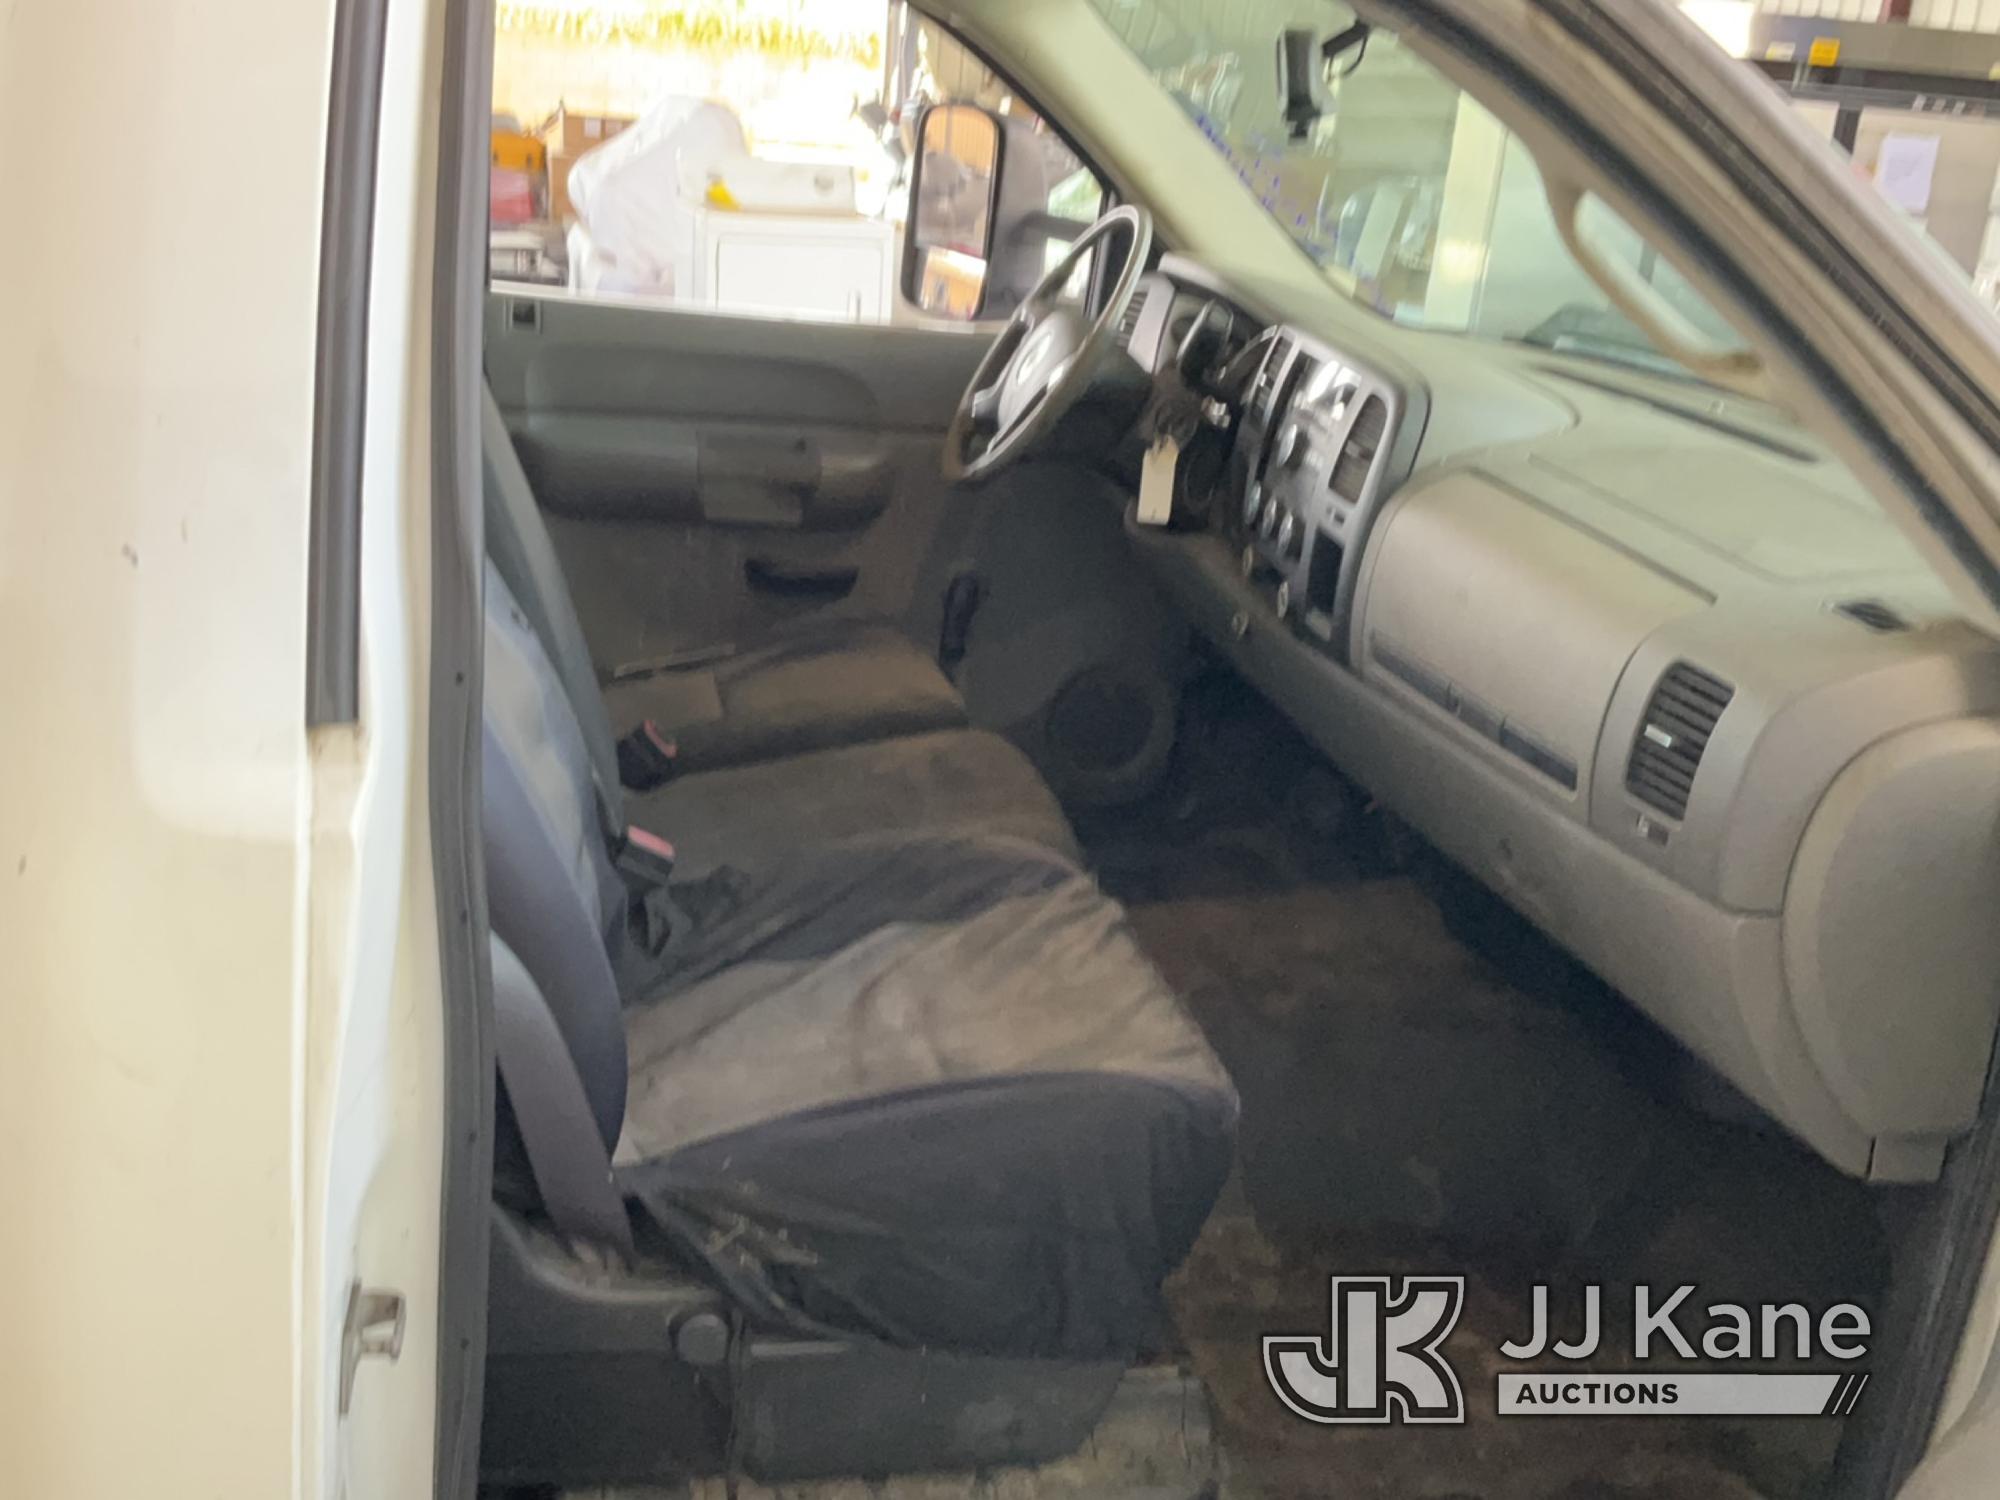 (Jurupa Valley, CA) 2008 GMC Sierra 2500 HD Regular Cab Pickup 2-DR Runs & Moves, Driver Door is Dam